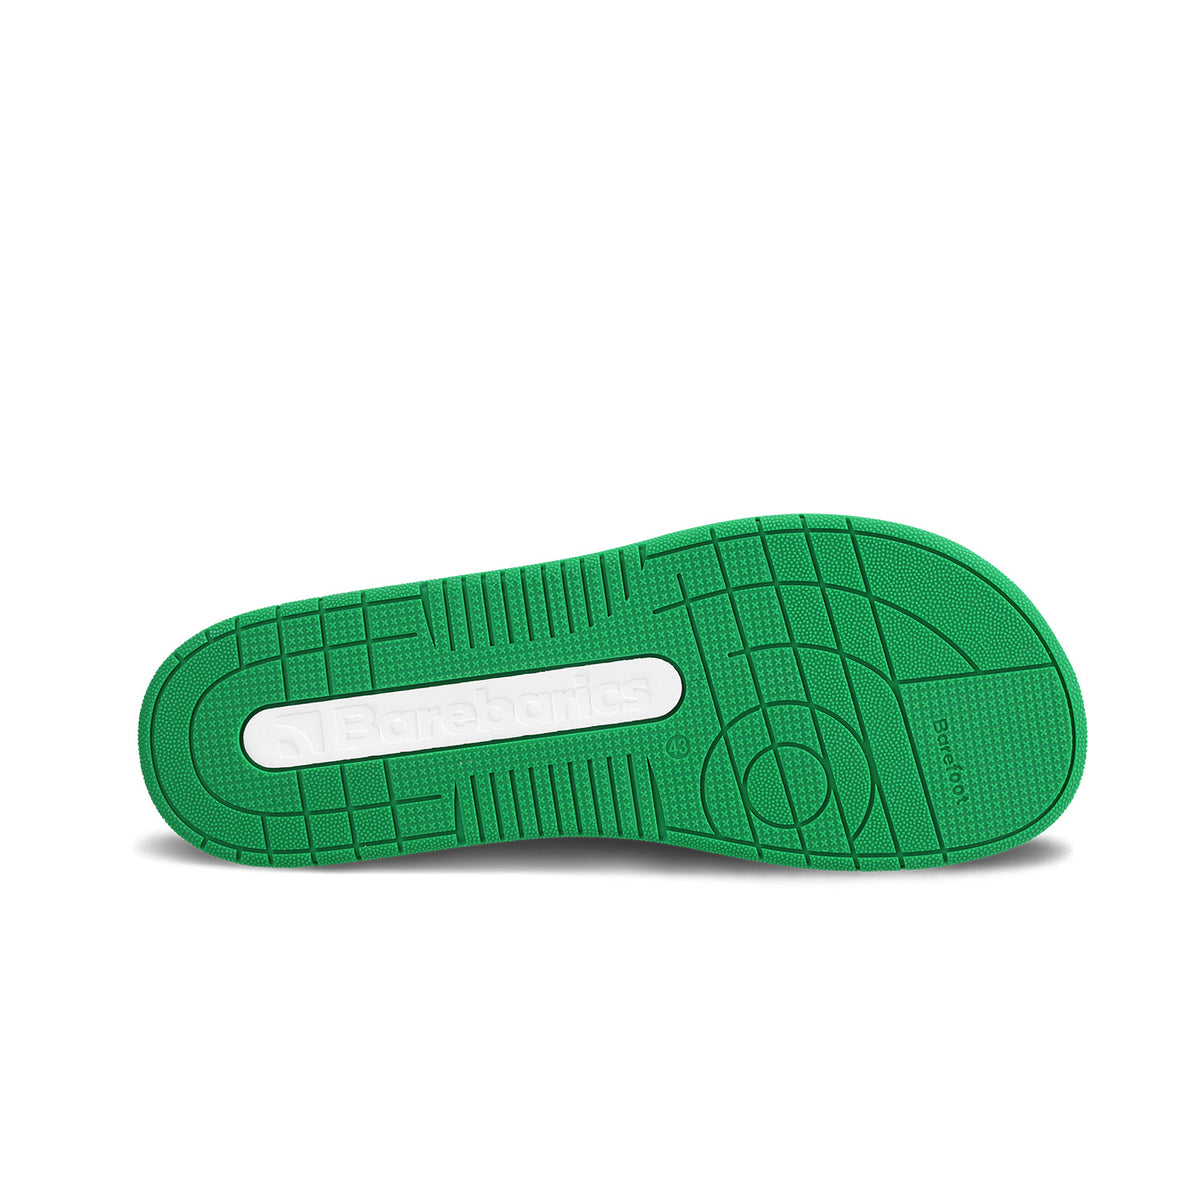 Barefoot Sneakers Barebarics Arise - White & Green 6  - OzBarefoot